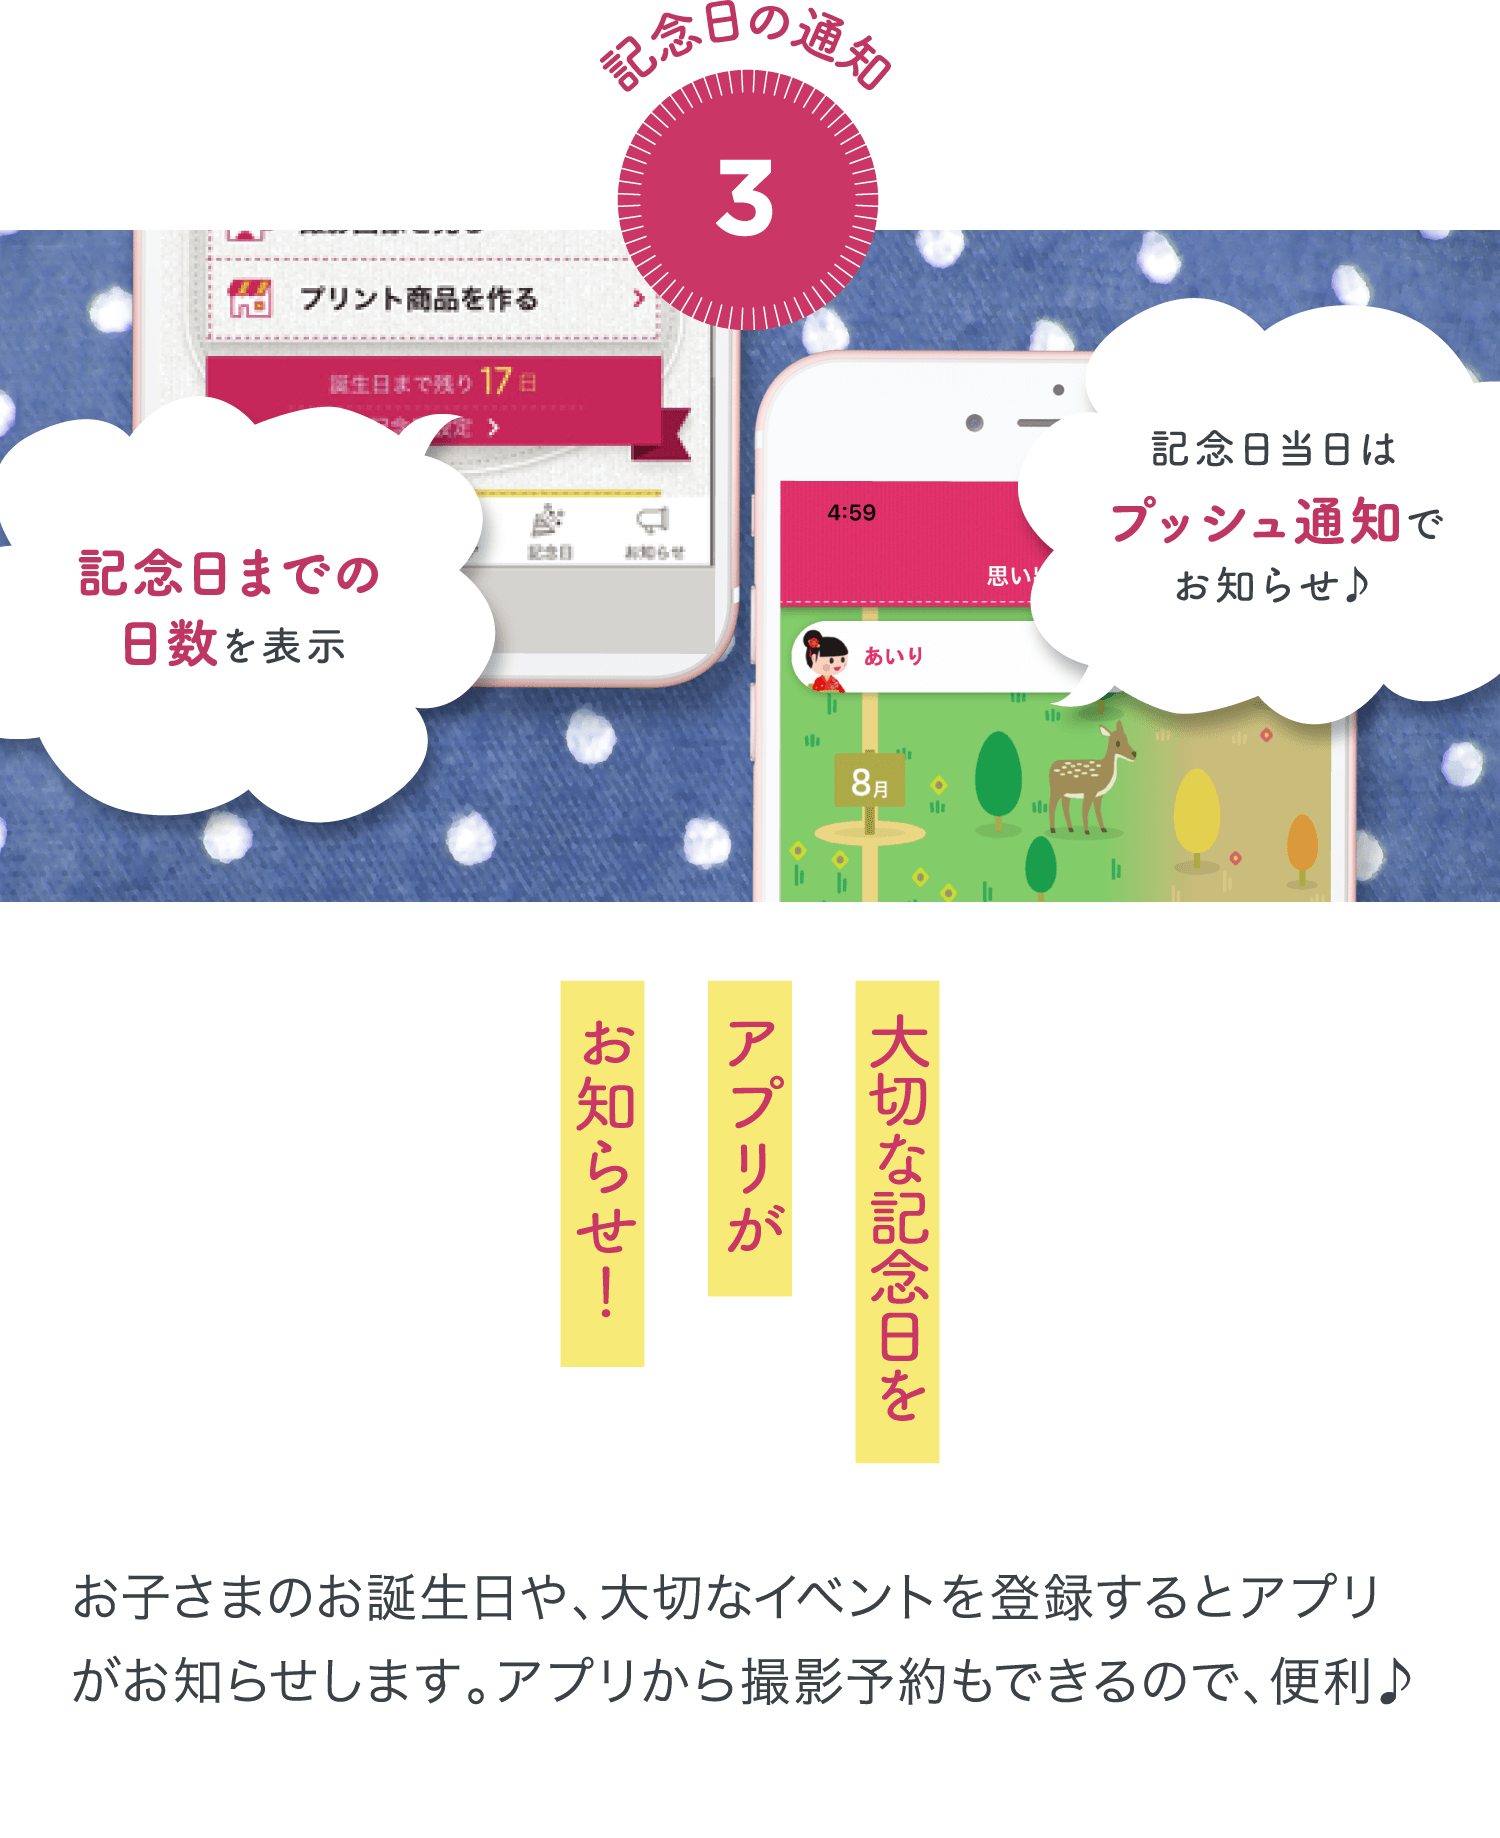 3.記念日の通知 大切な記念日をアプリがお知らせ！